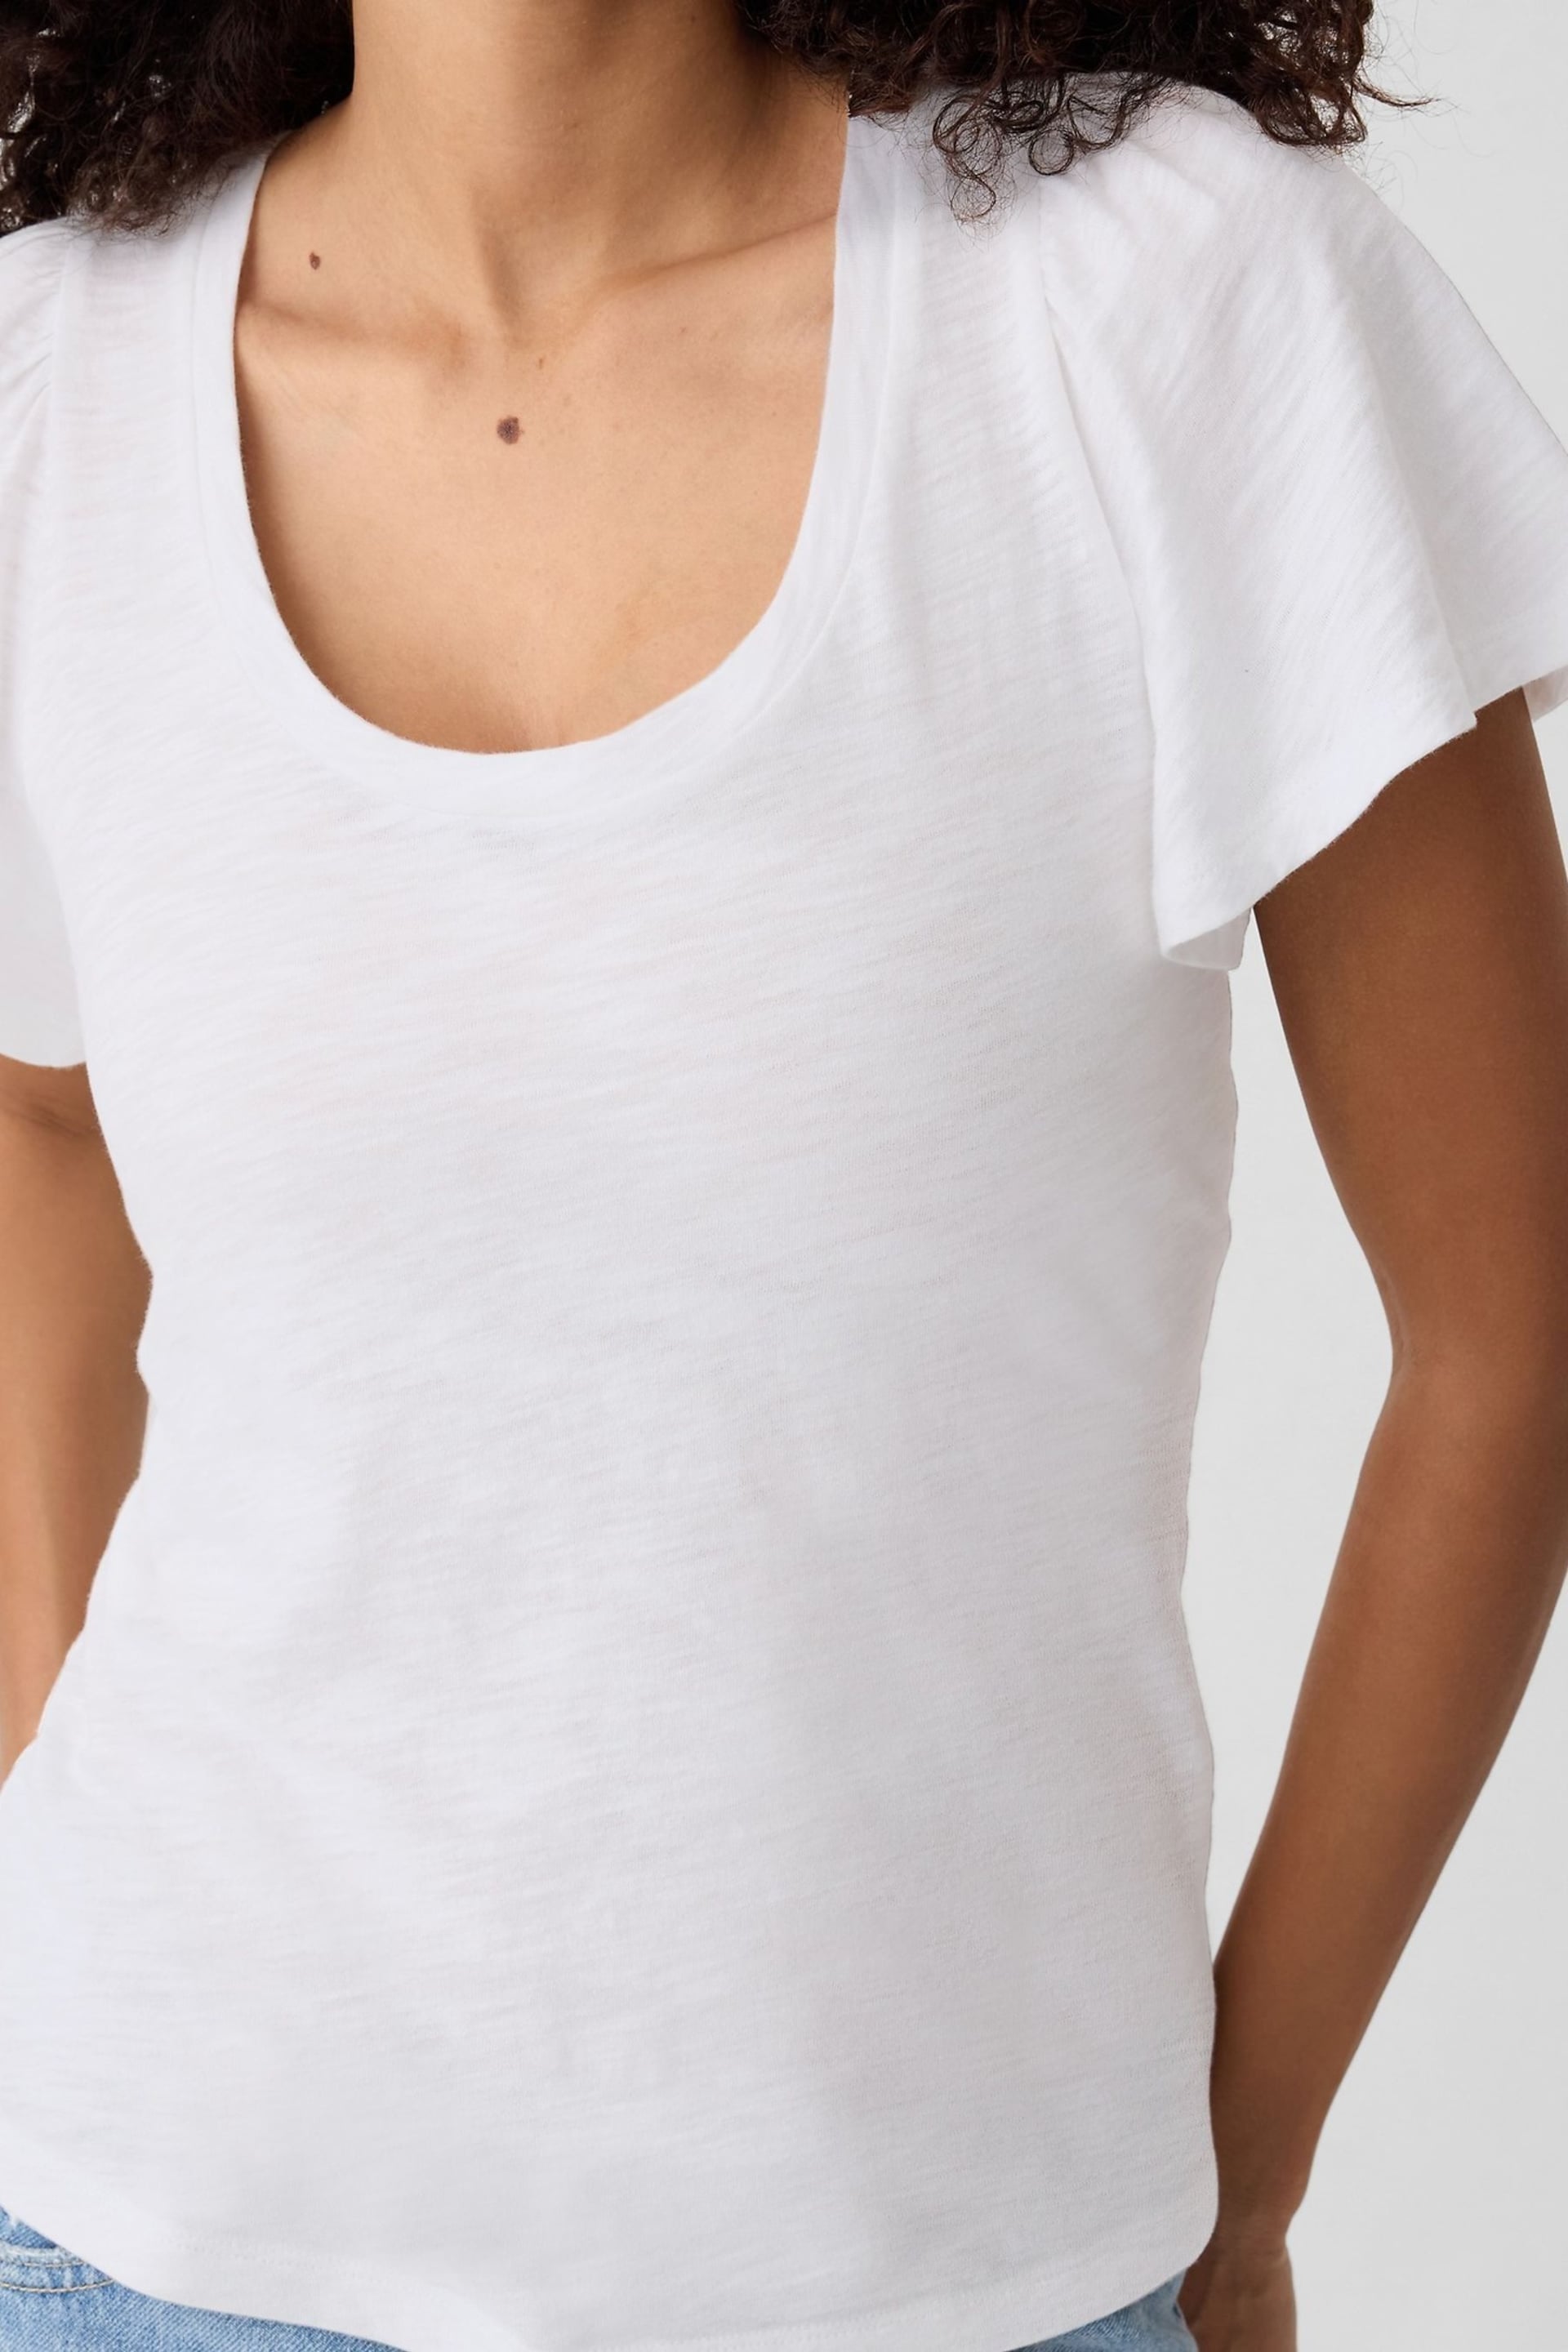 Gap White ForeverSoft Slub Short Sleeve T-Shirt - Image 4 of 5